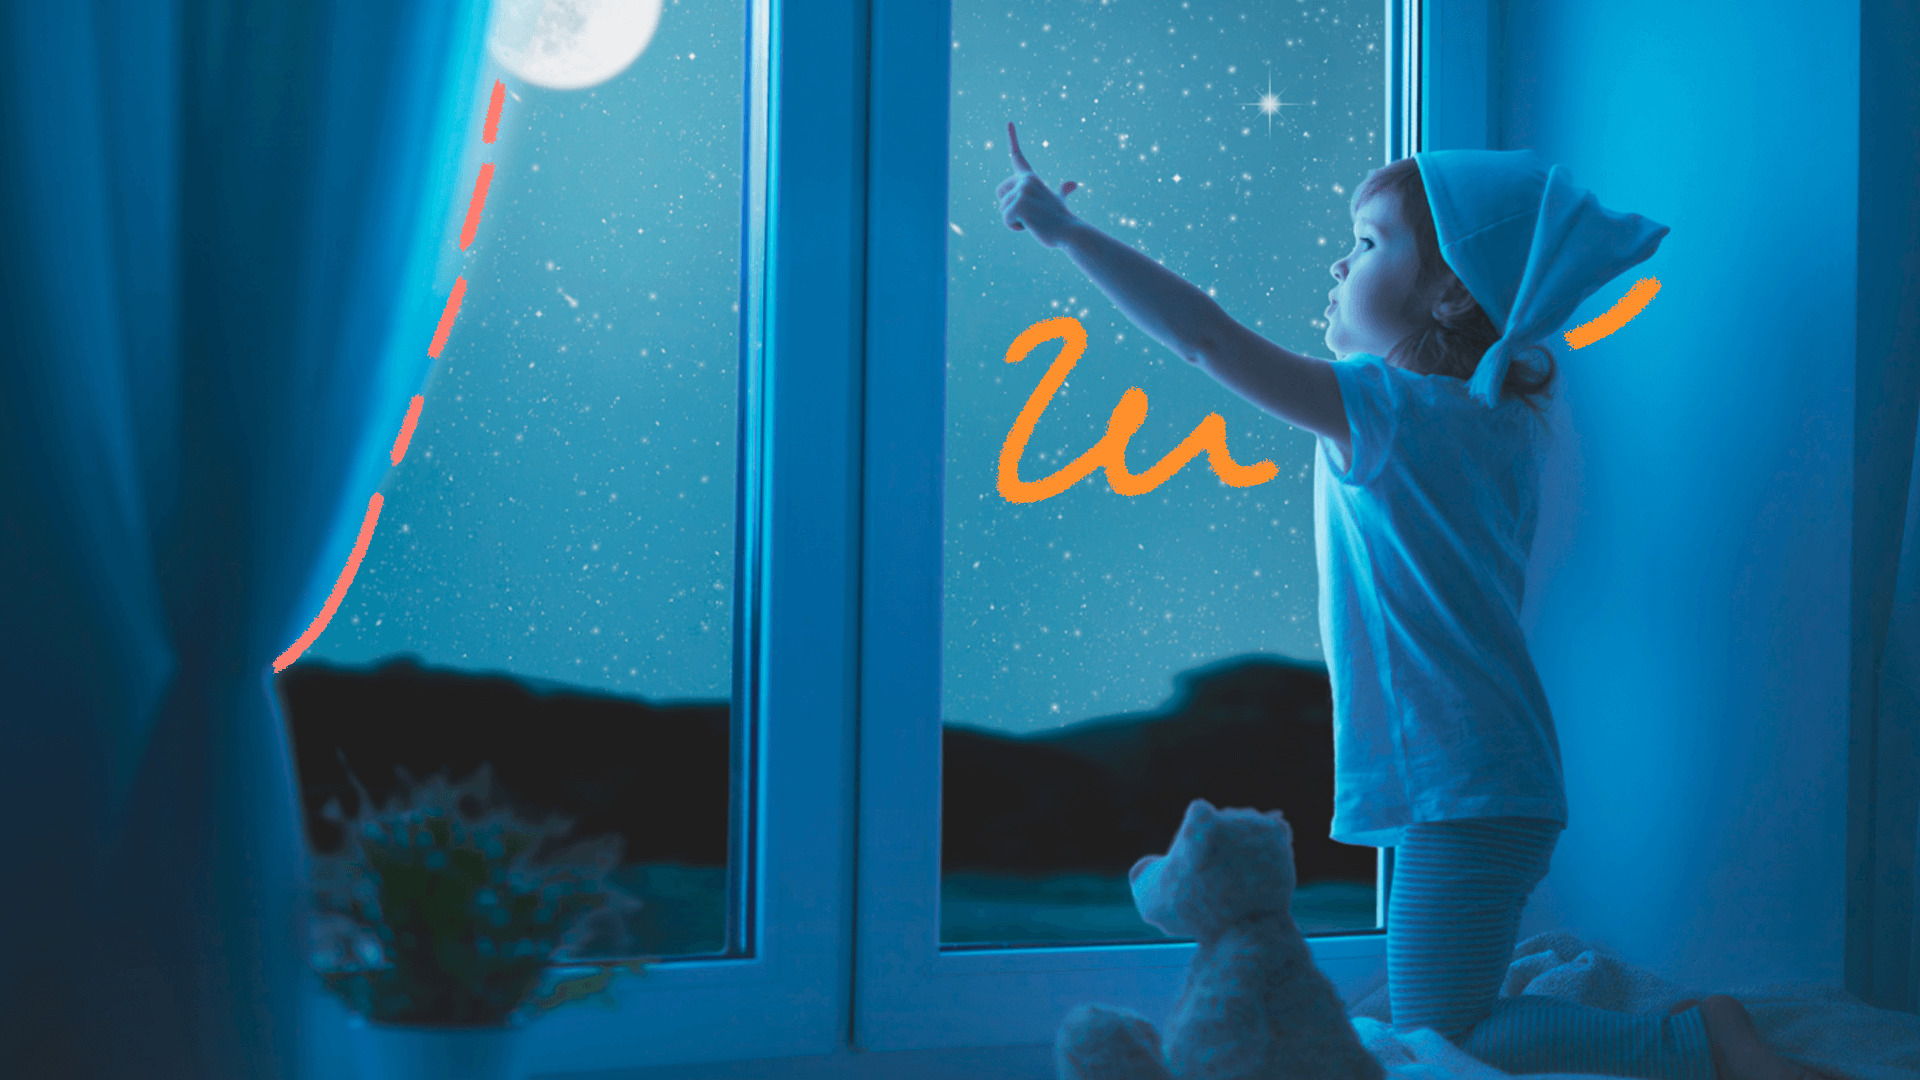 imagem ilustra a matéria sobre astronomia para crianças. Um menino vestindo pijama etouca de dormir está em pé olhando para a janela do quarto e apontando para o céu ao lado de um ursinho de pelúcia.